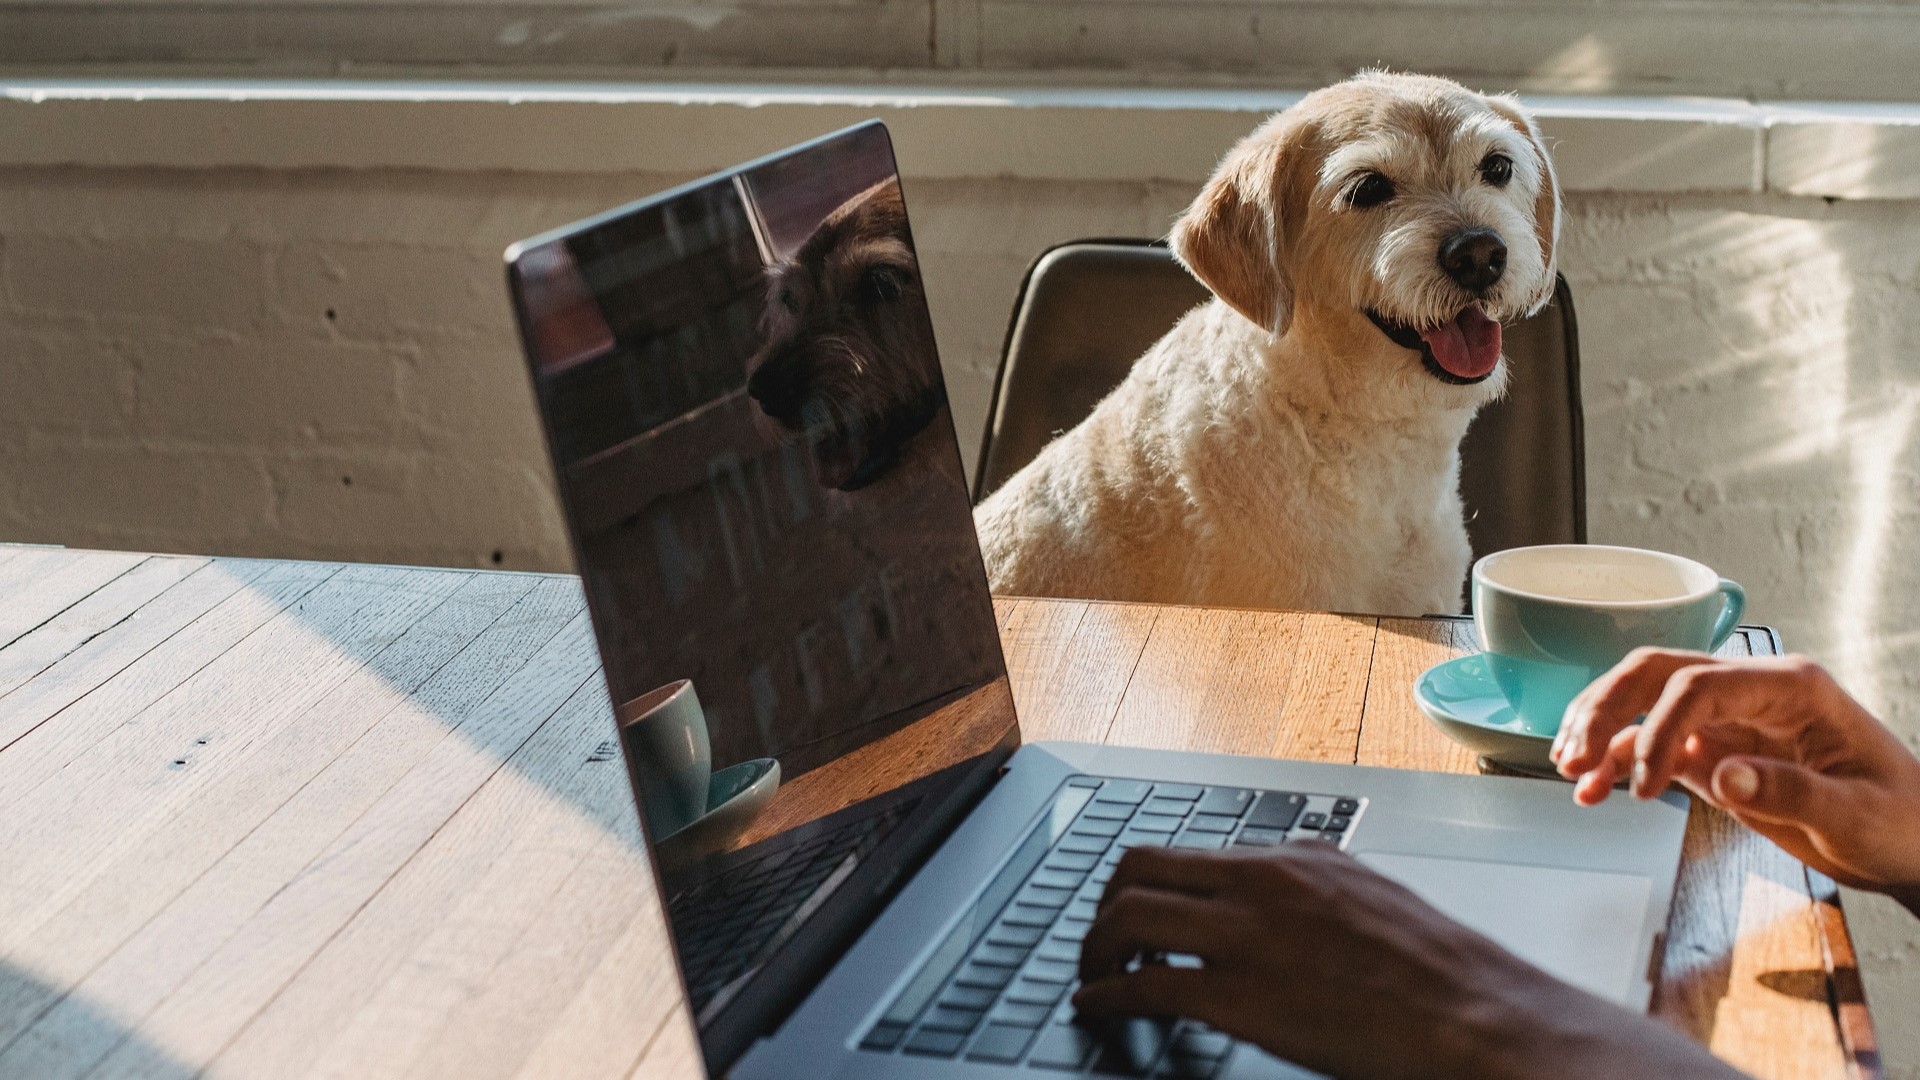 Kuvituskuva, jossa etätöitä tekevän tietokone ja koira